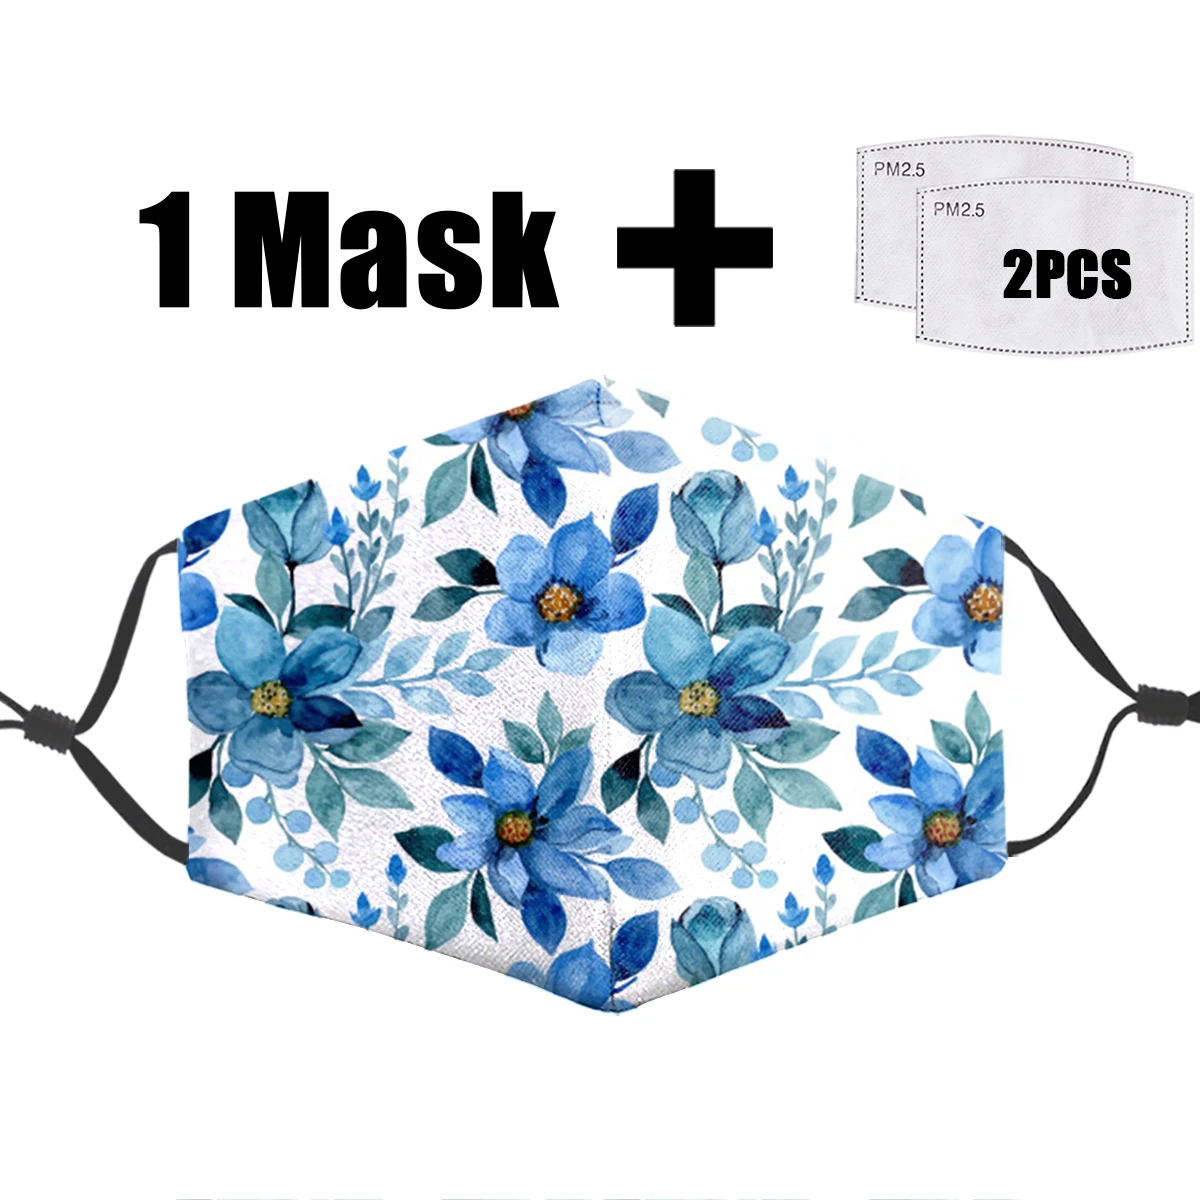 

Маска для лица PM2.5 с мультяшным цветочным принтом, пылезащитная моющаяся маска для лица в стиле хип-хоп, с фильтрами бактерий